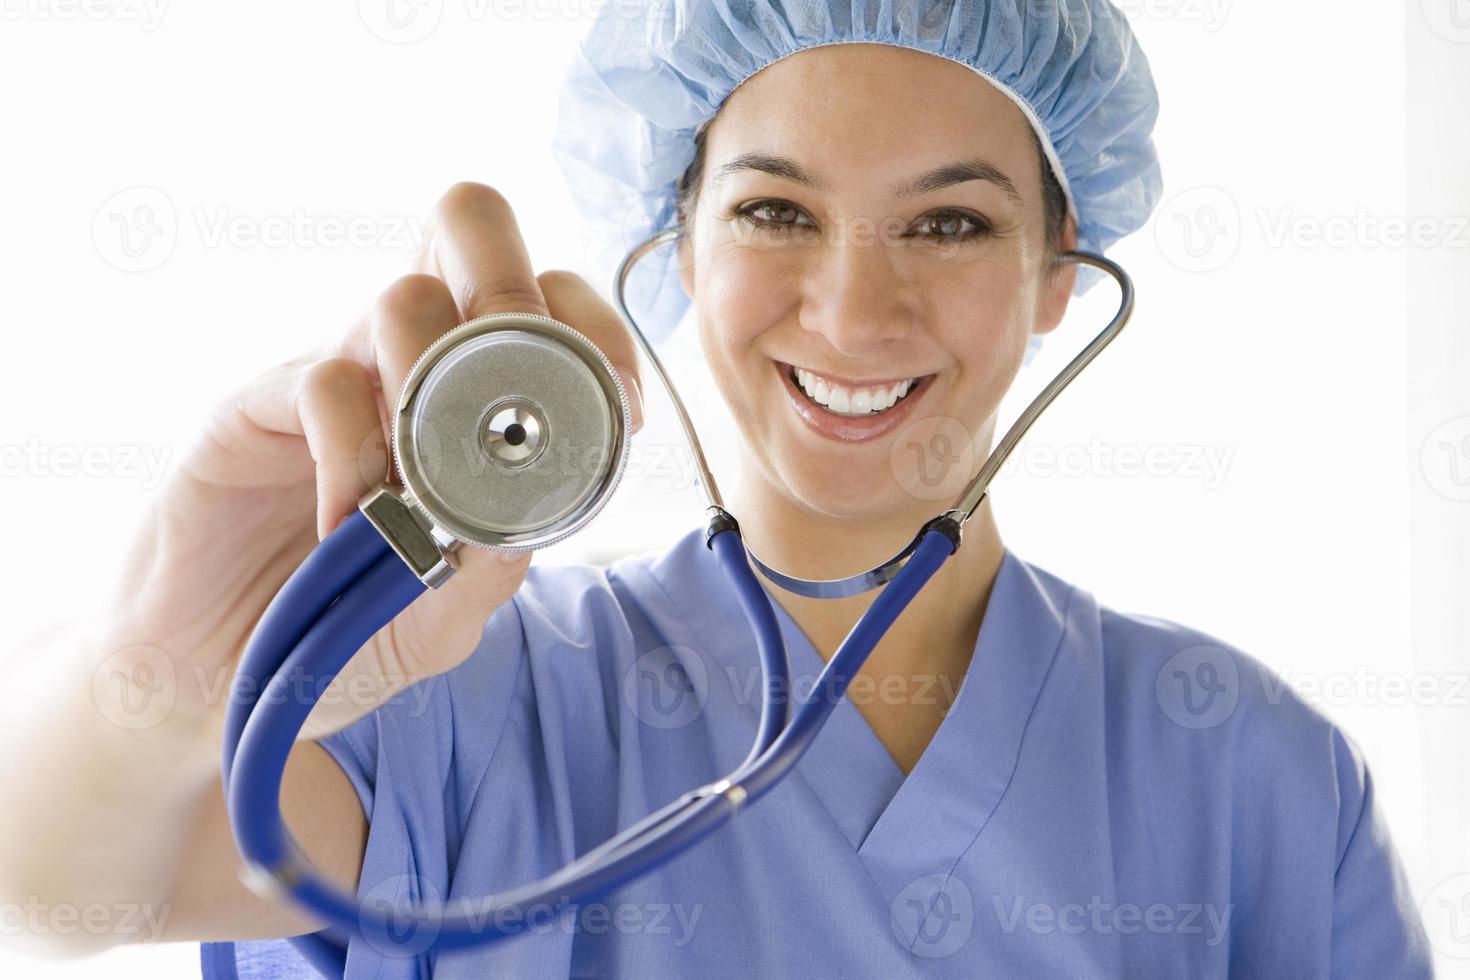 Ärztin mit Stethoskop, lächelnd, Porträt foto